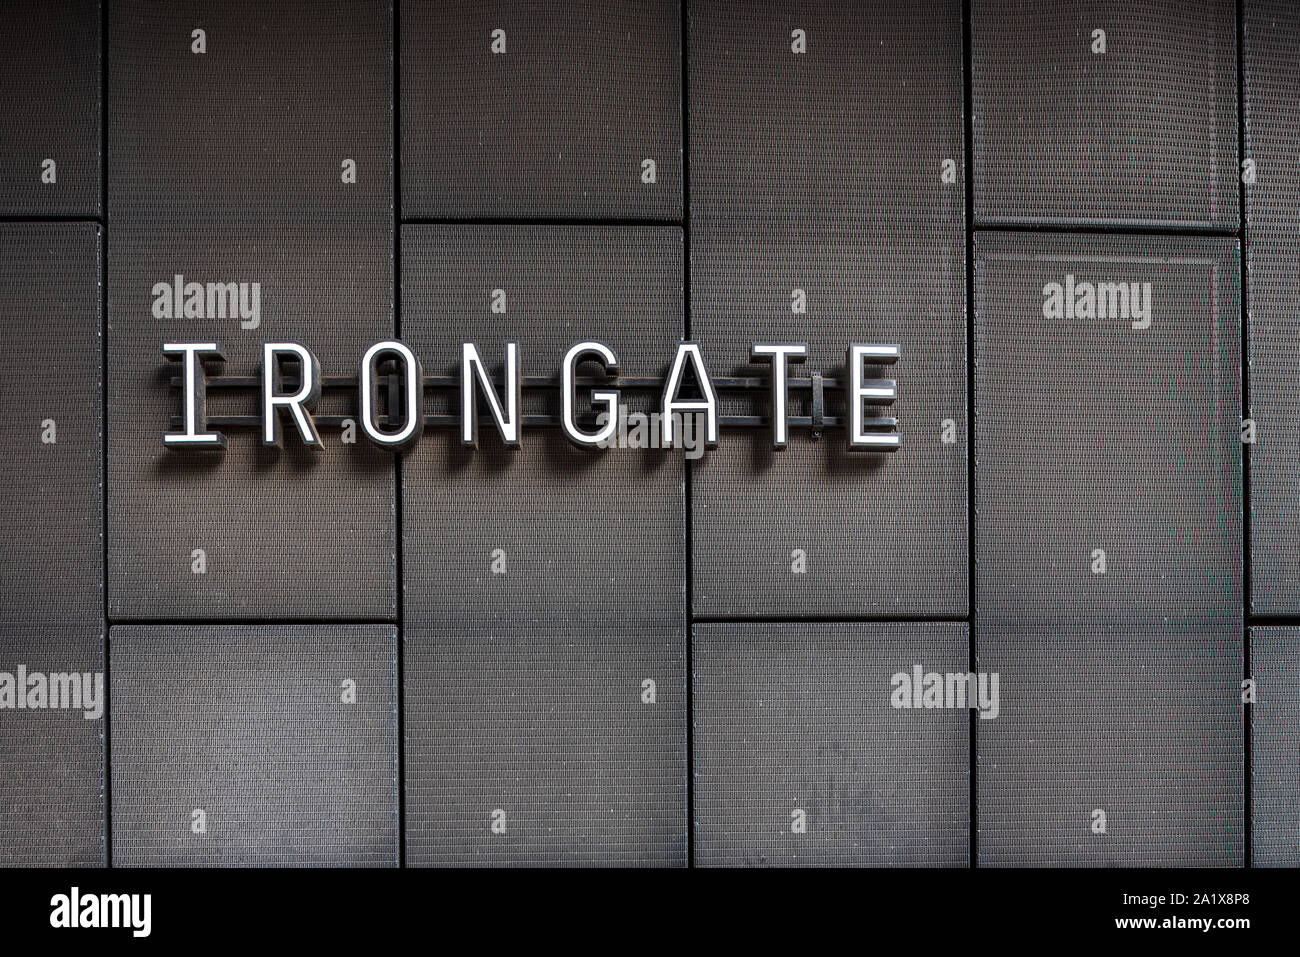 Irongate House London Aldgate -Détail de la rénovation bâtiment Irongate. Architectes originaux Fitzroy, Robinson & Partners 1978. Refurb Tatehindle Banque D'Images